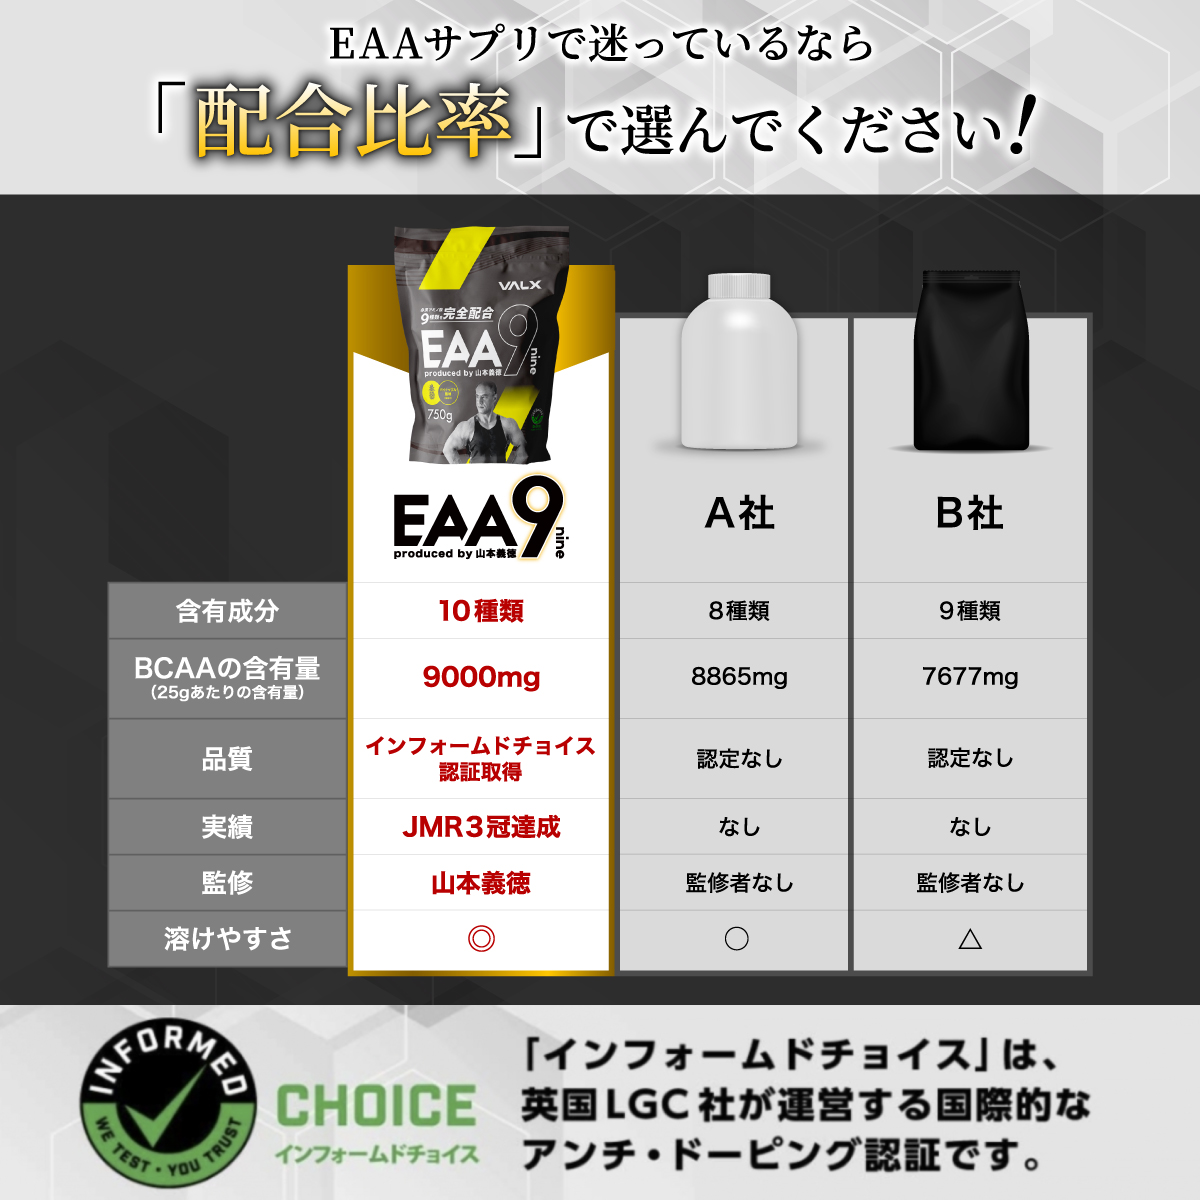 楽天市場】【2個セット】VALX (バルクス) EAA9 Produced by 山本義徳 